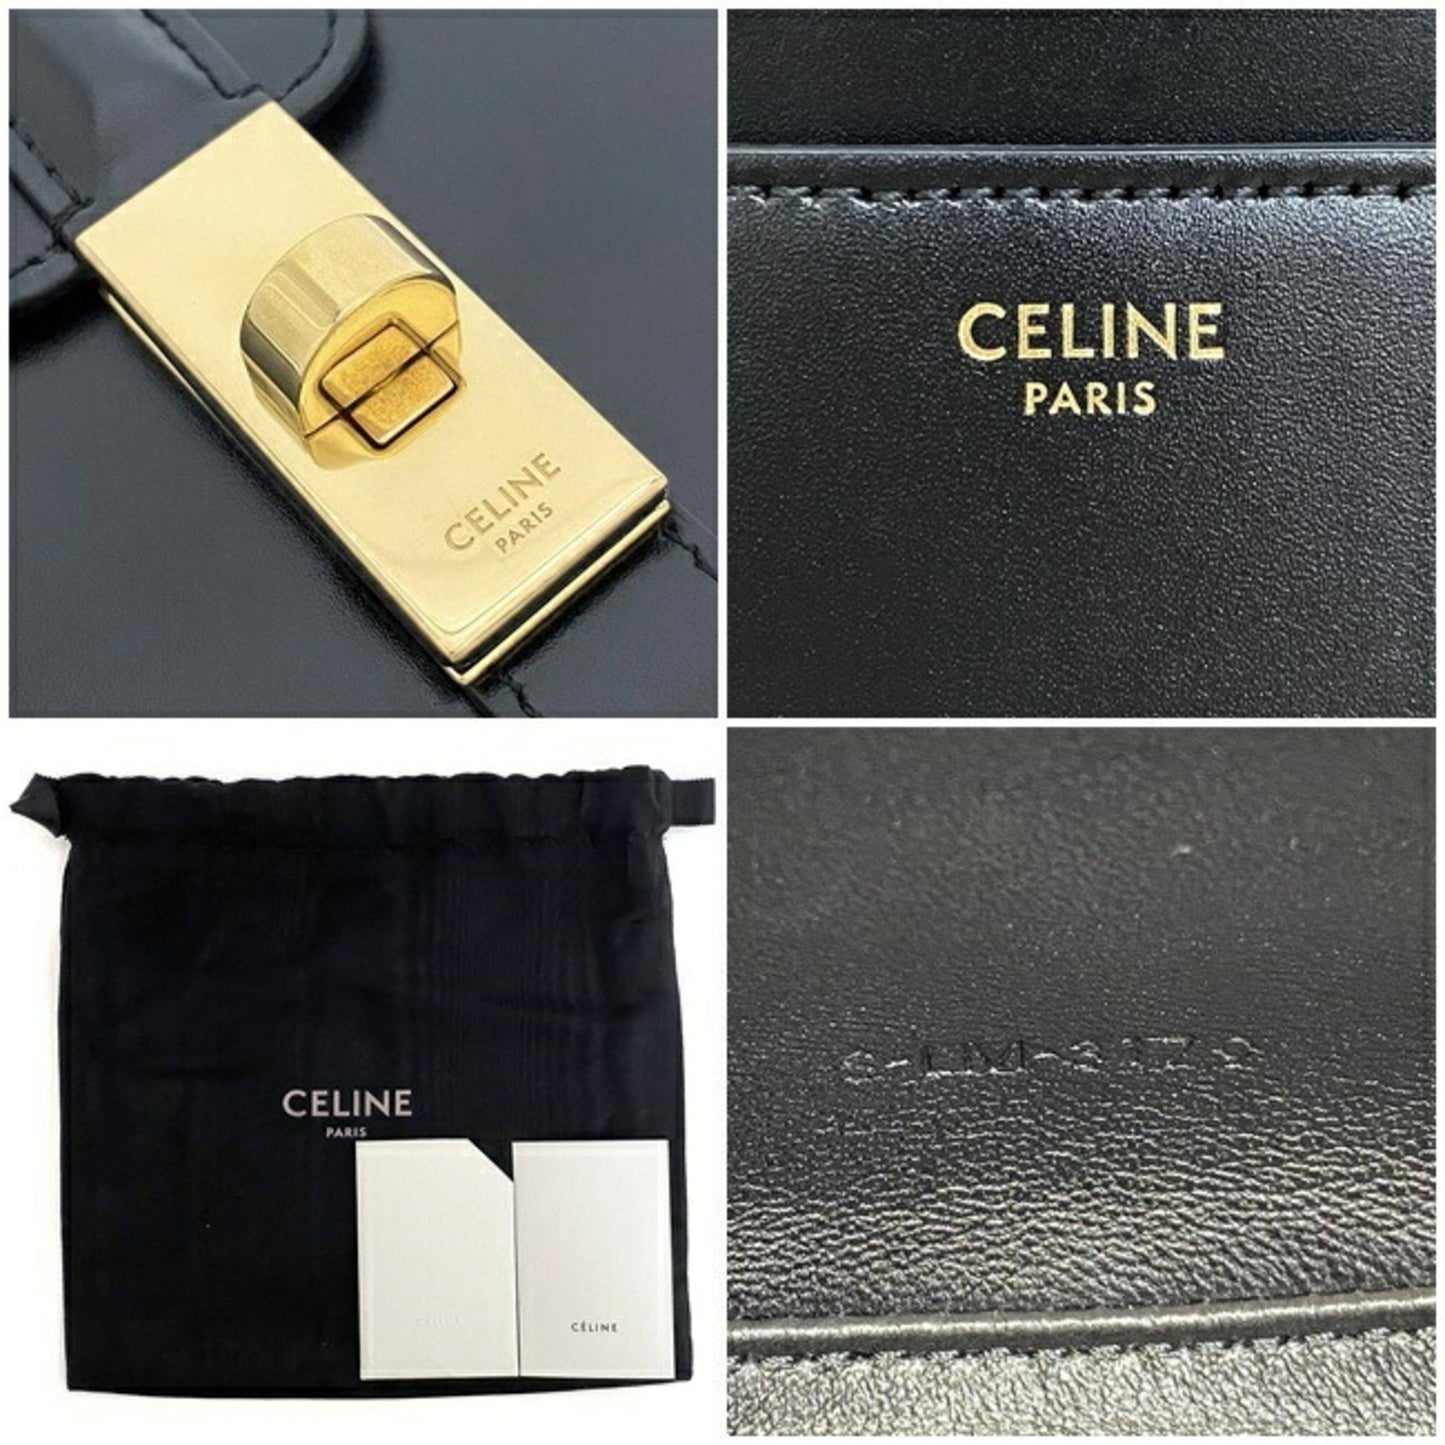 Celine Women's Elegant Black Leather Shoulder Bag with Gold Hardware in Black